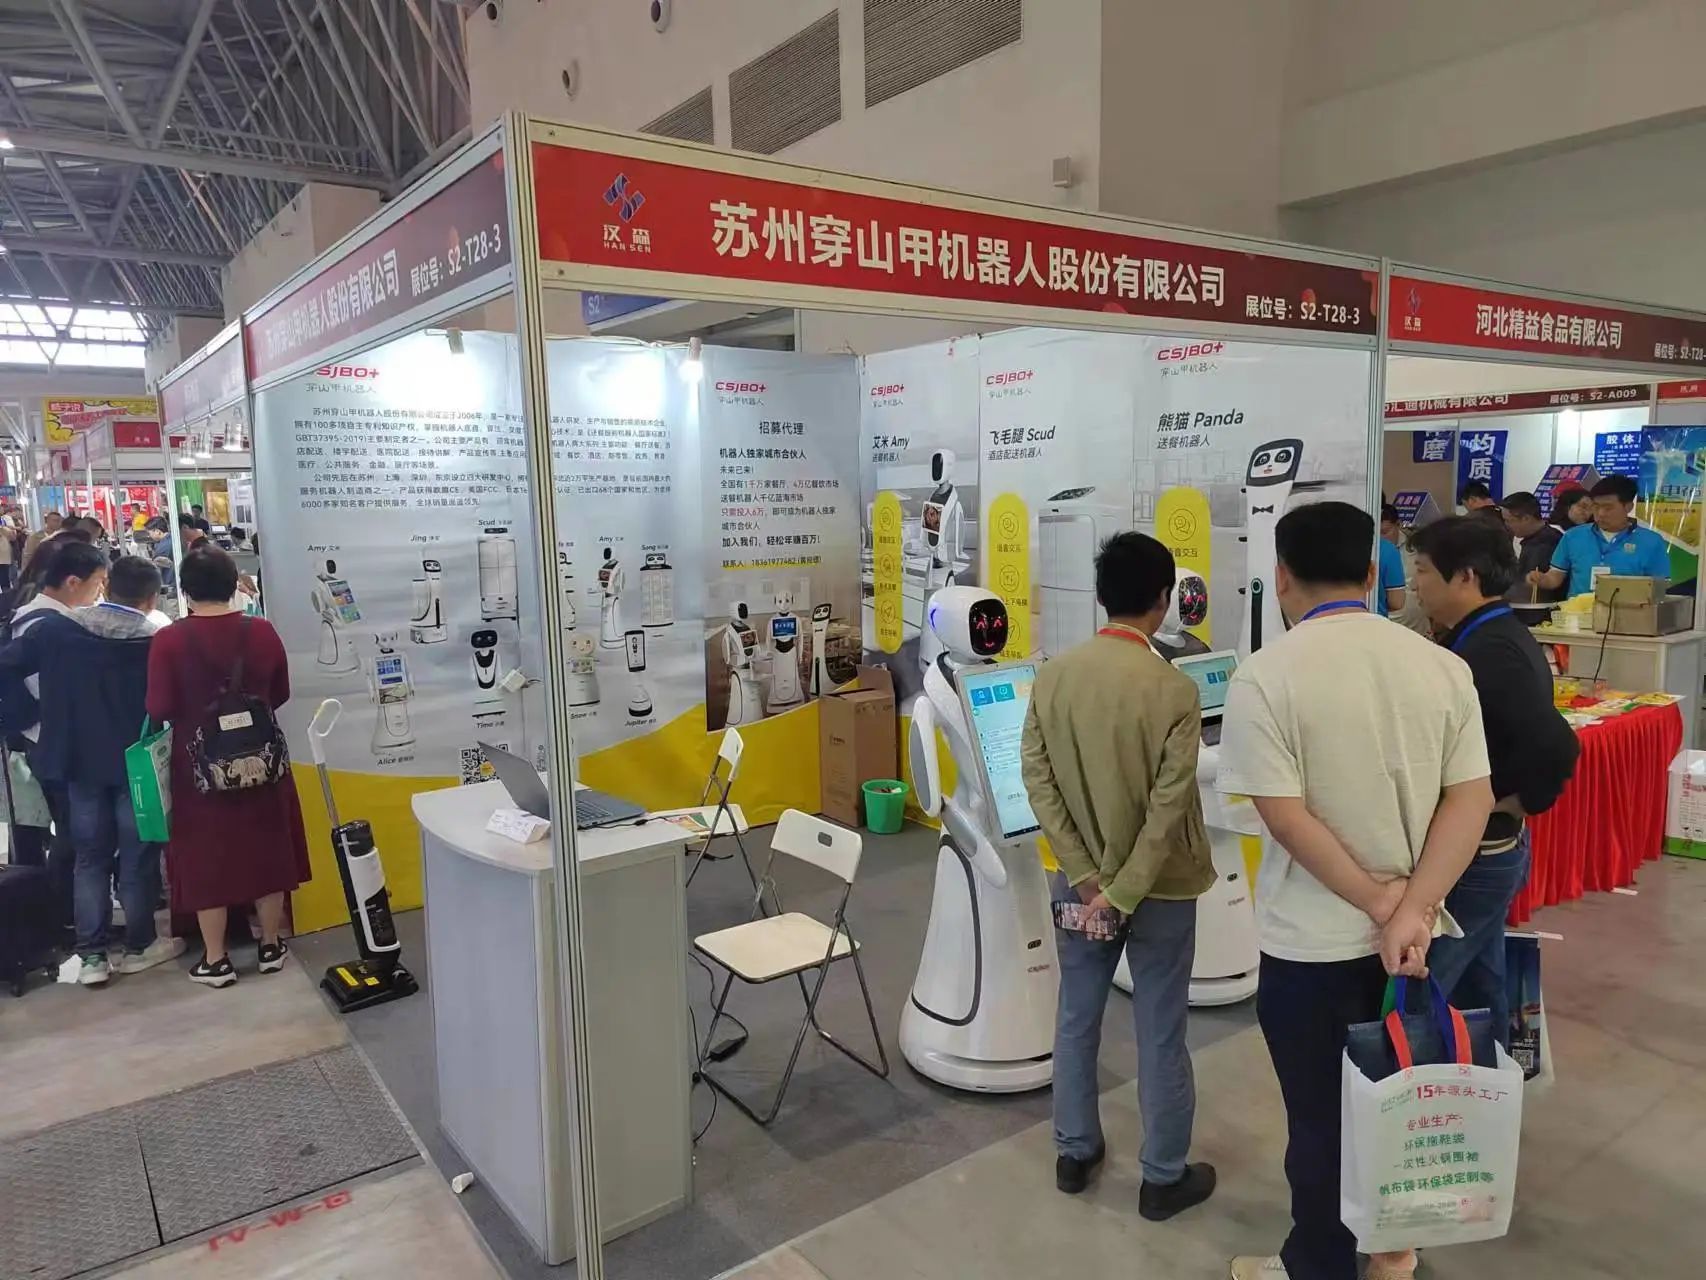 Lumitaw ang Pangolin Robot sa "Tenth Chongqing International Hot Pot Ingredients Exhibition"